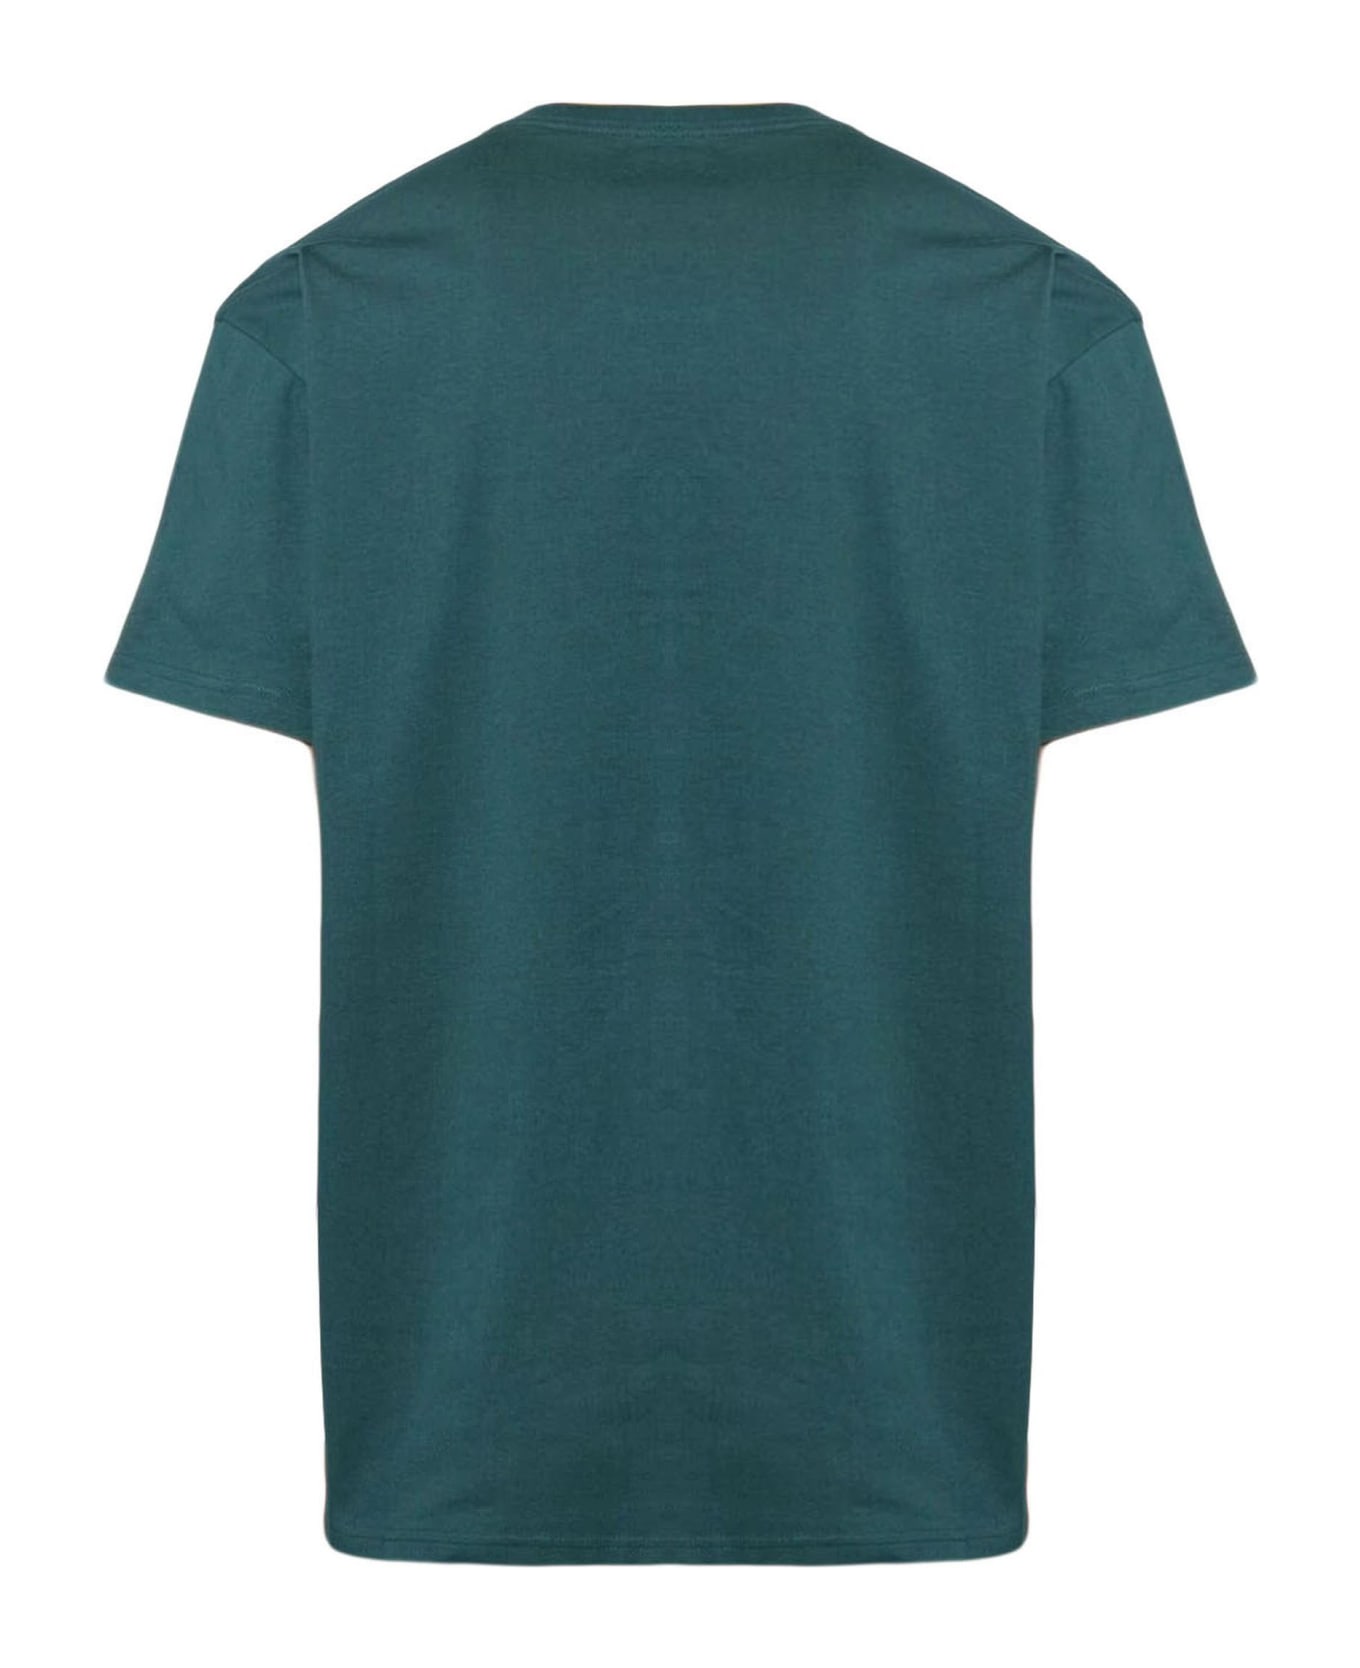 Carhartt Green Cotton T-shirt - Verde